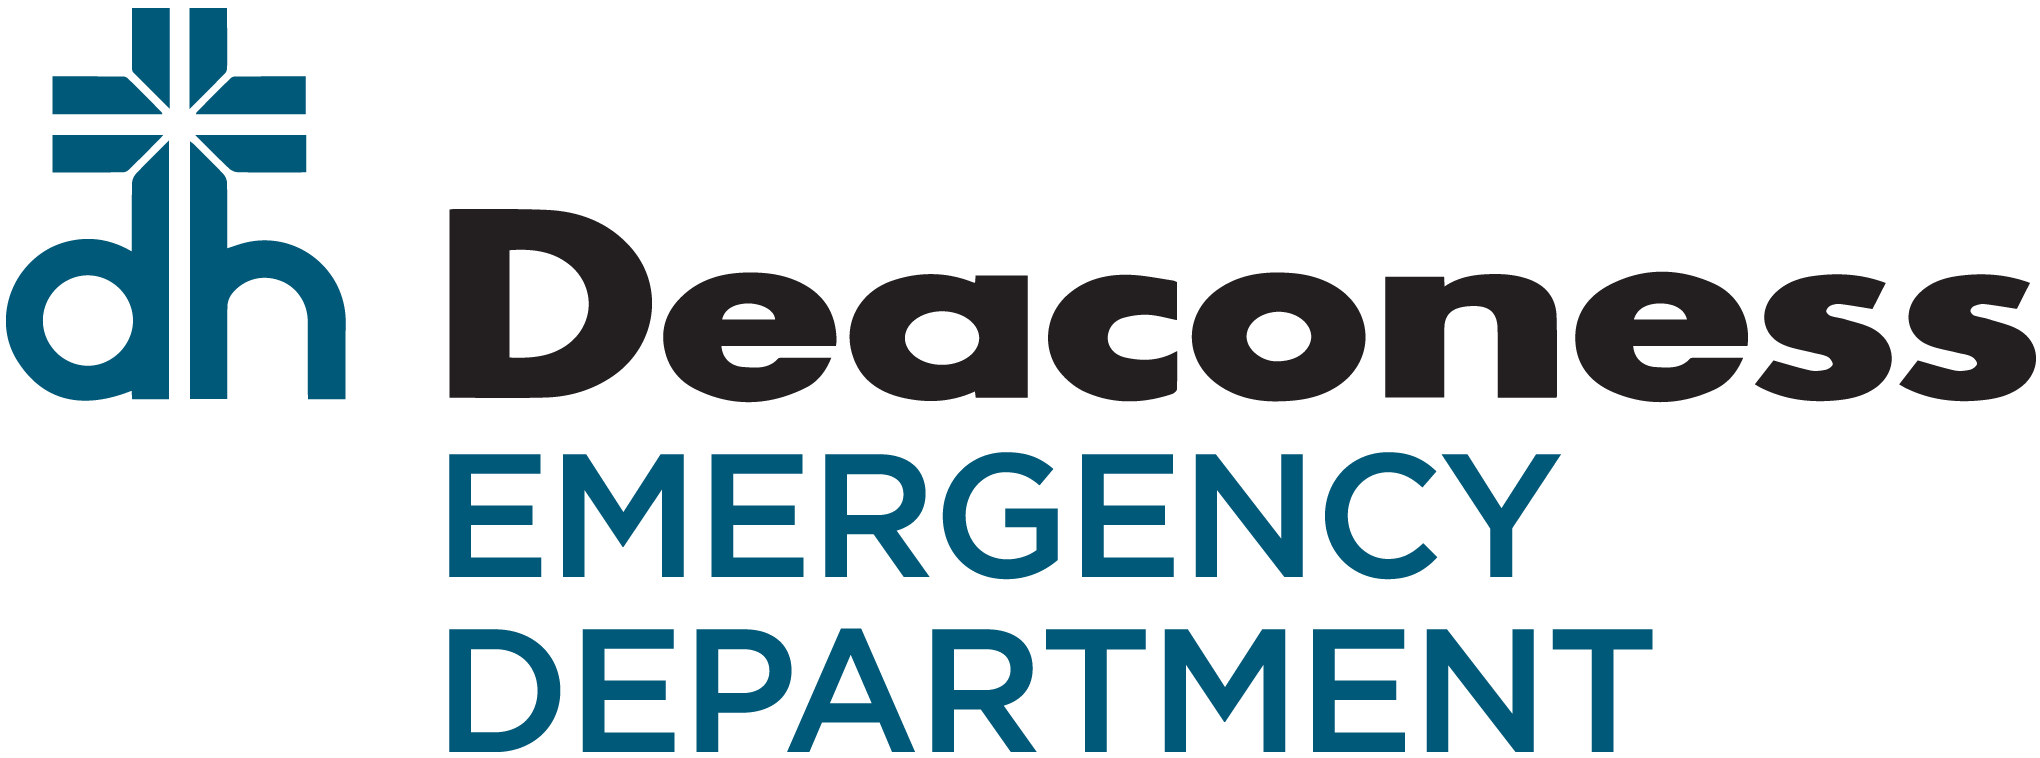 Deaconess Emergency Department